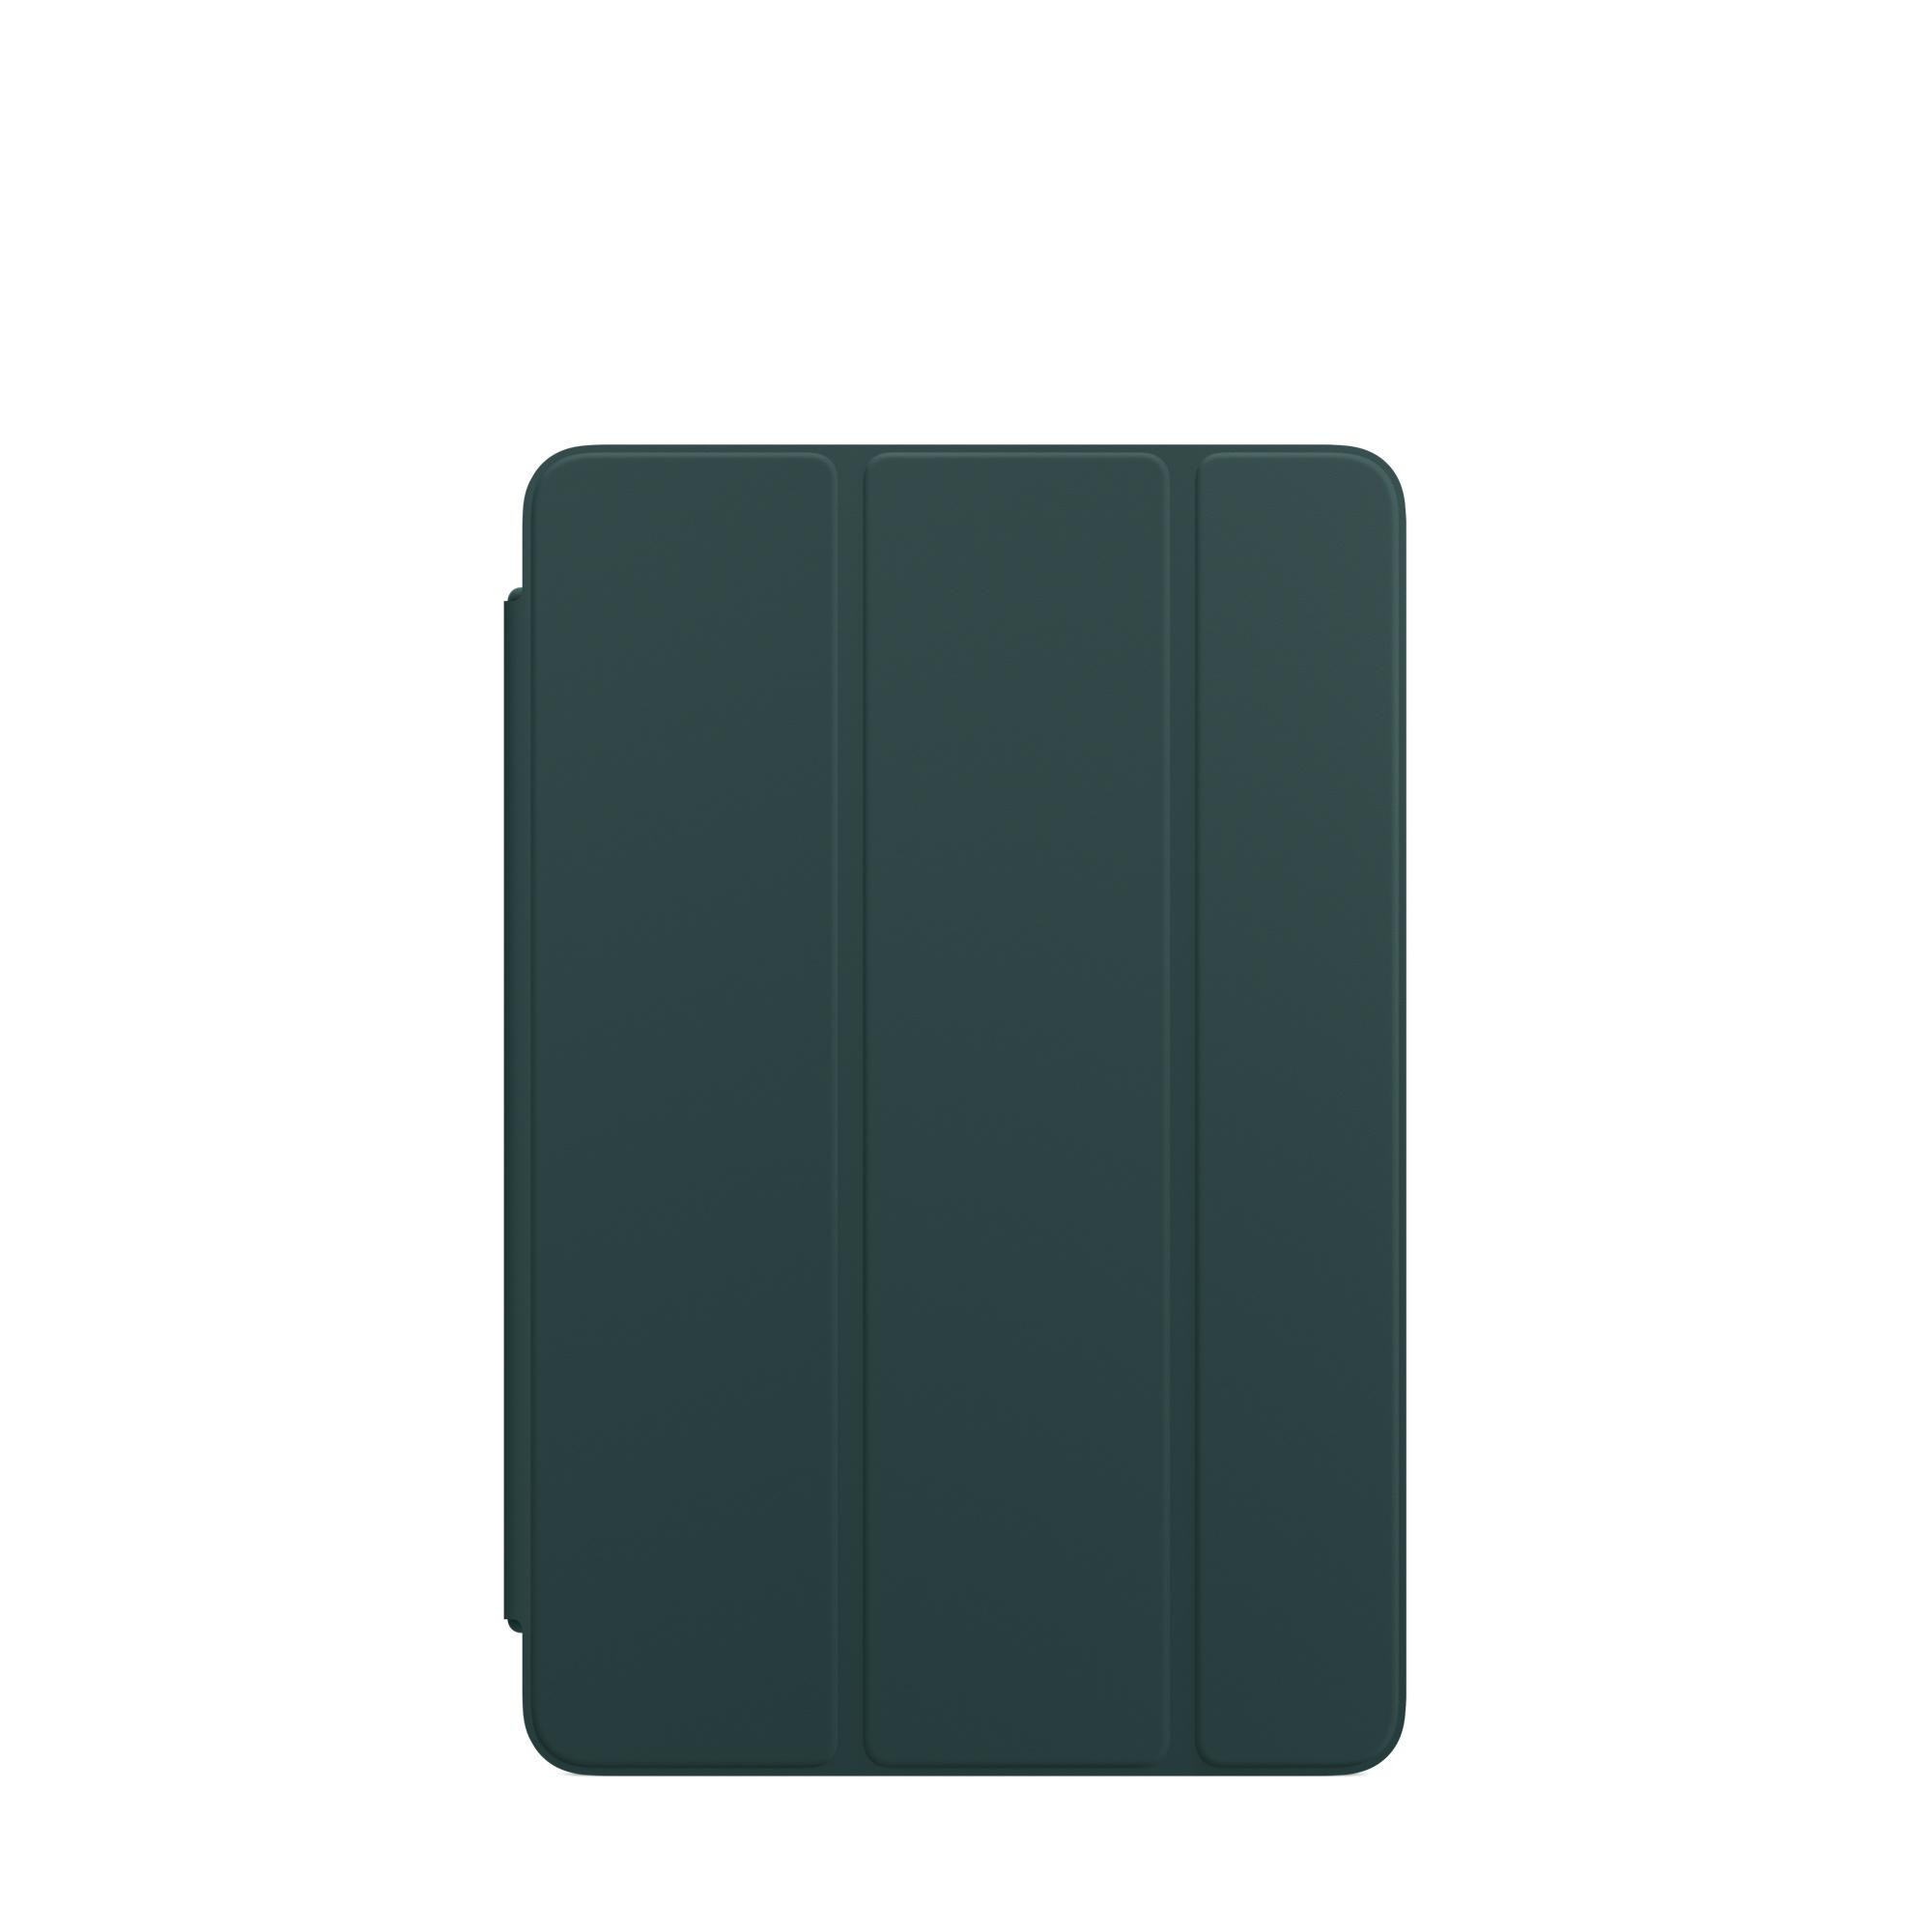 Apple iPad mini Smart Cover - Mallard Green (MJM43) - зображення 1